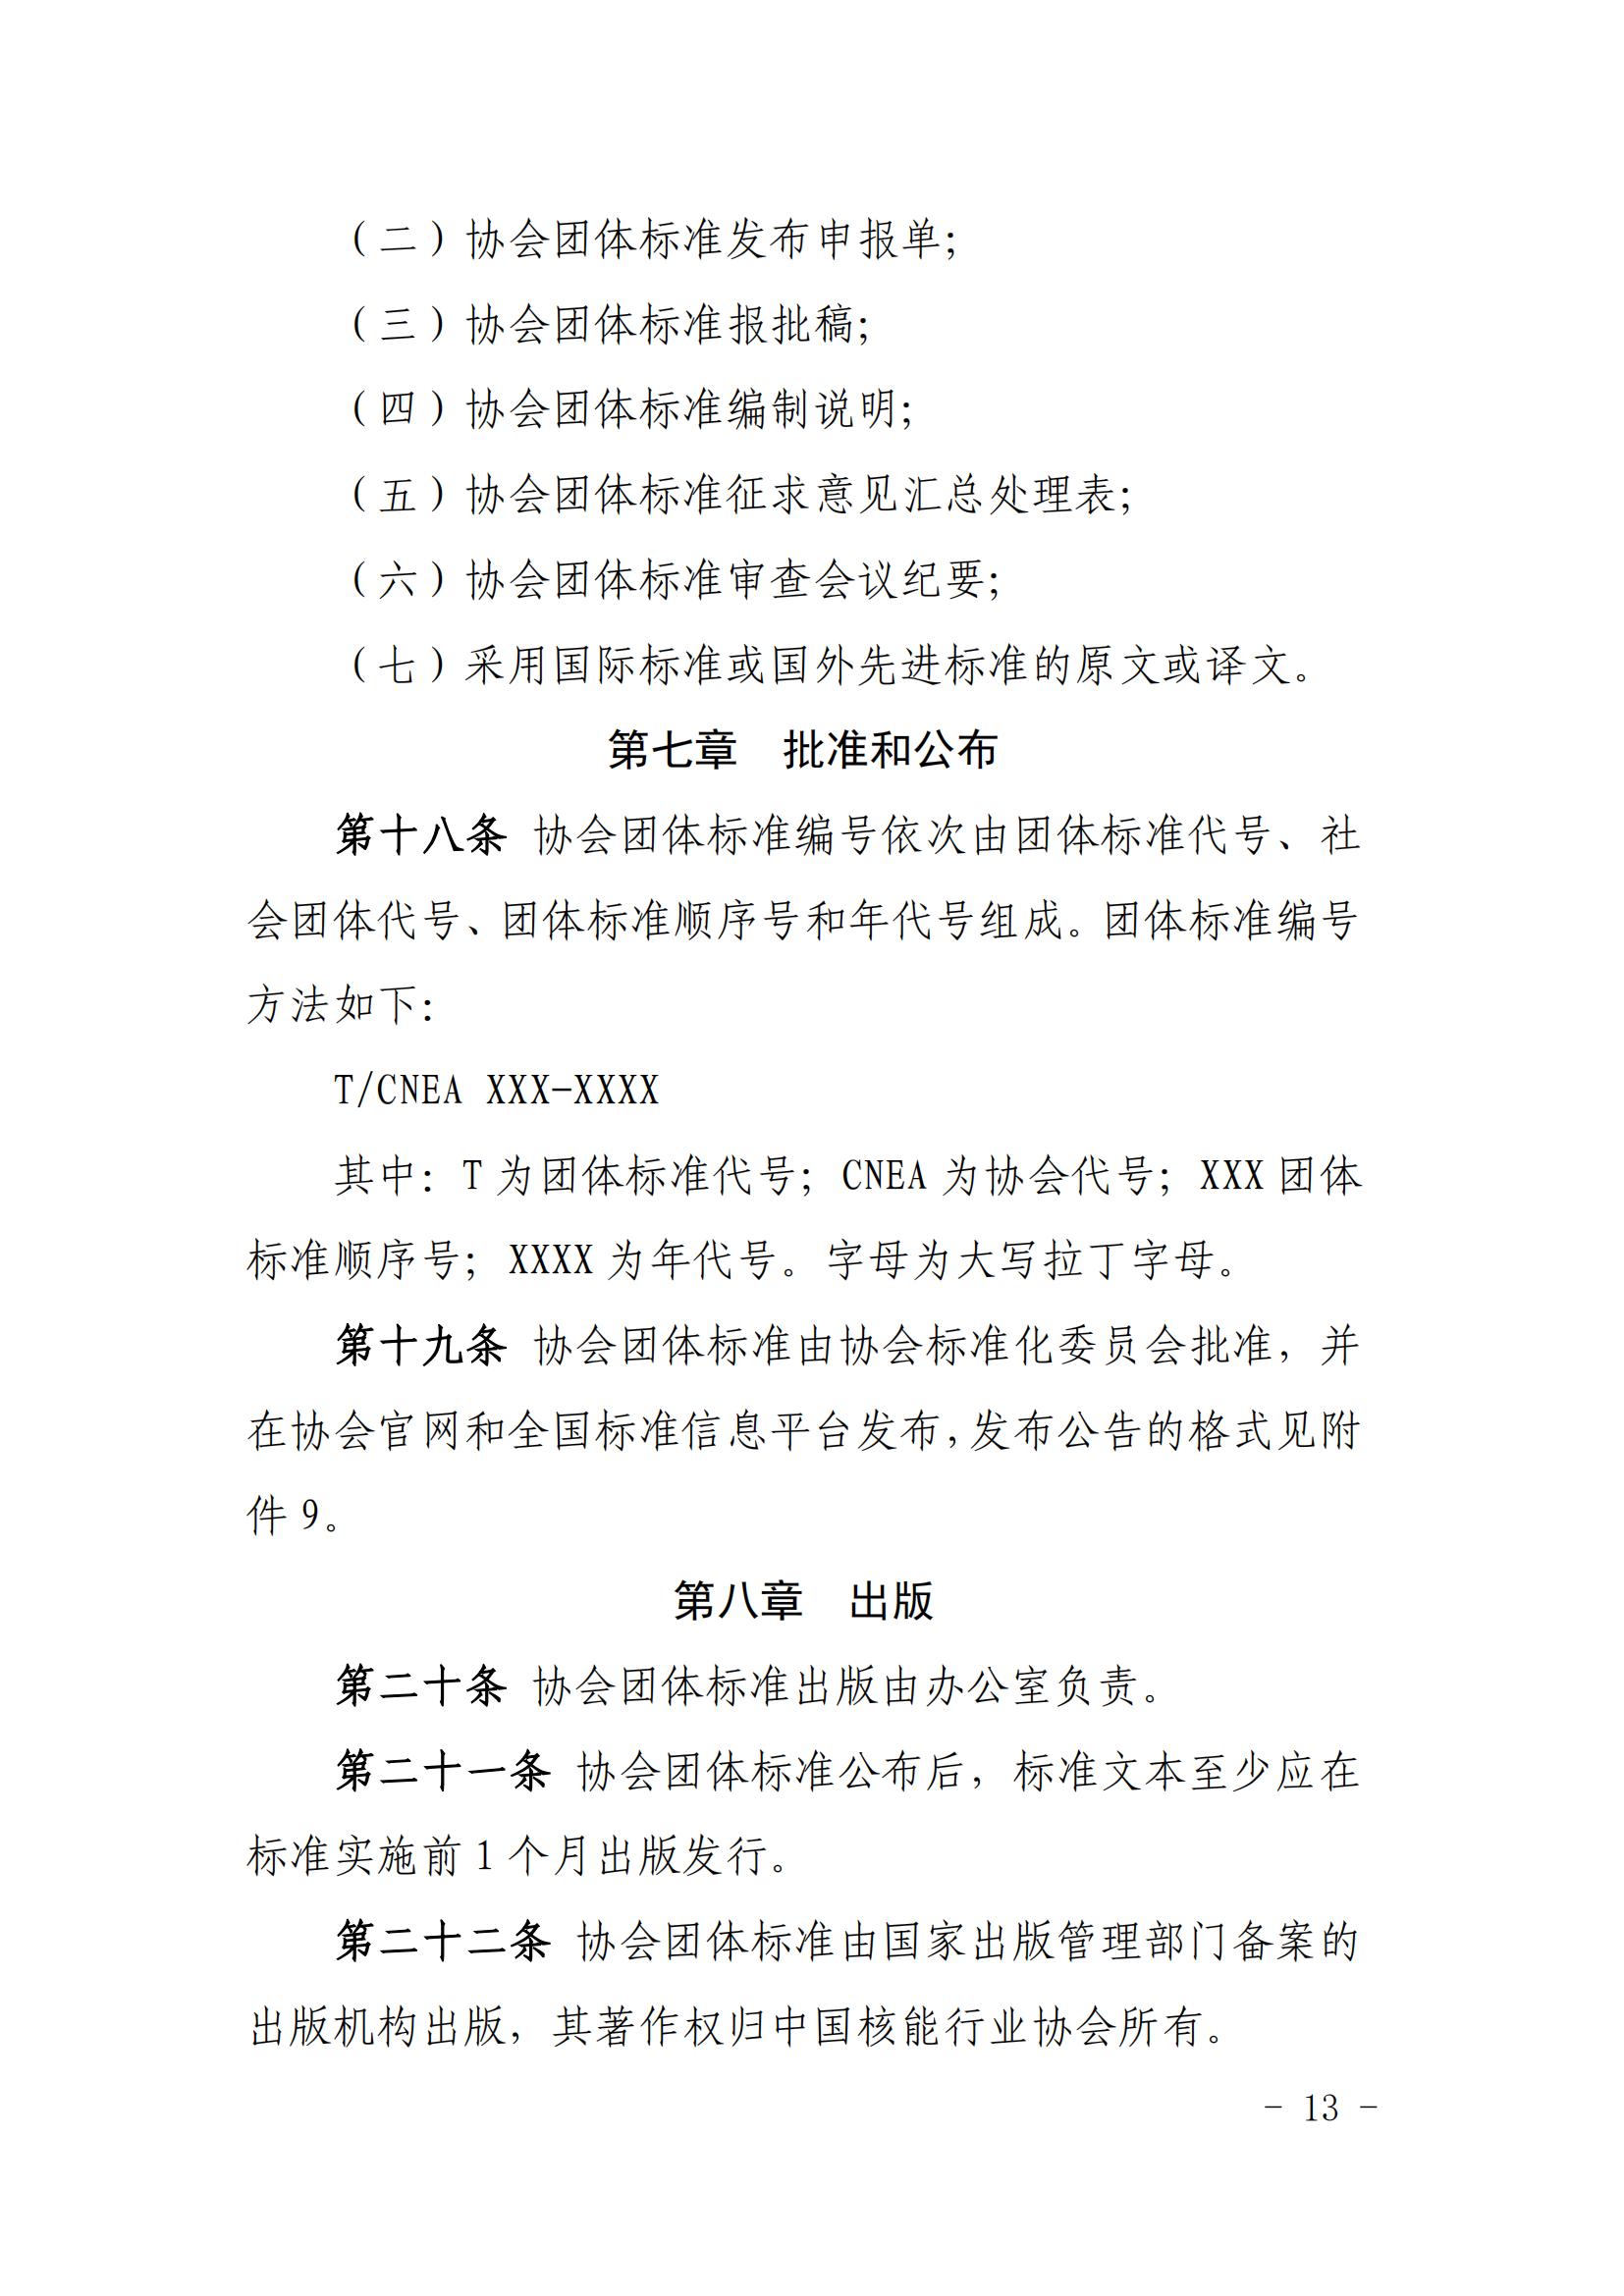 关于印发《中国核能行业协会团体标准管理办法（试行）》和《中国核能行业协会团体标准制修订细则（试行）》的通知_12.jpg